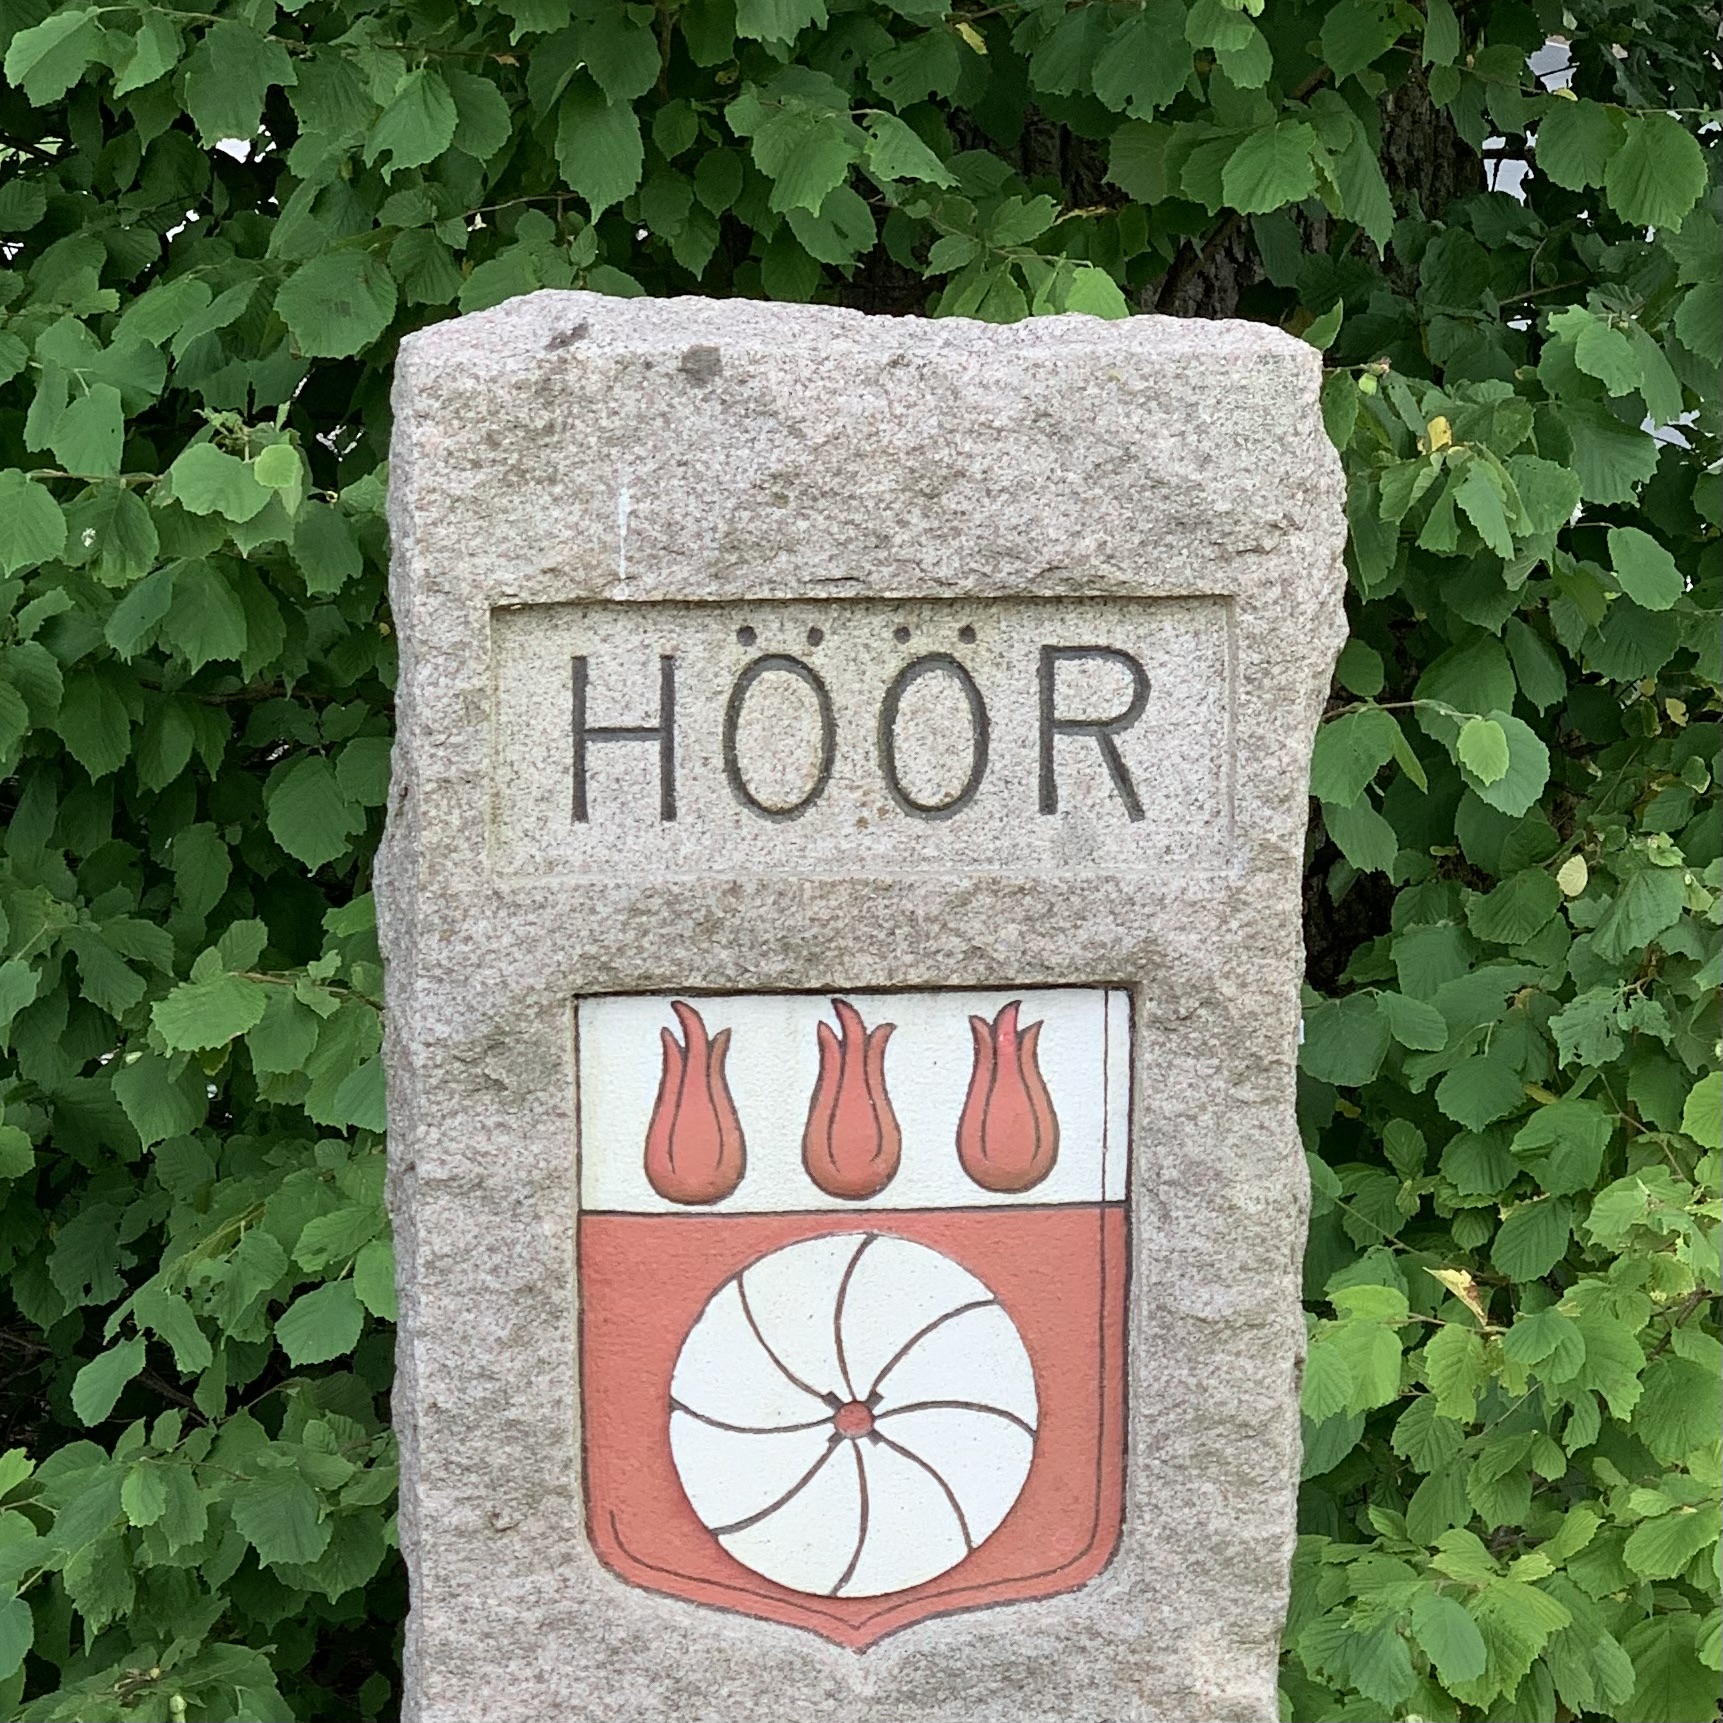 A large stone-rock with Höörs kommun logo on it.